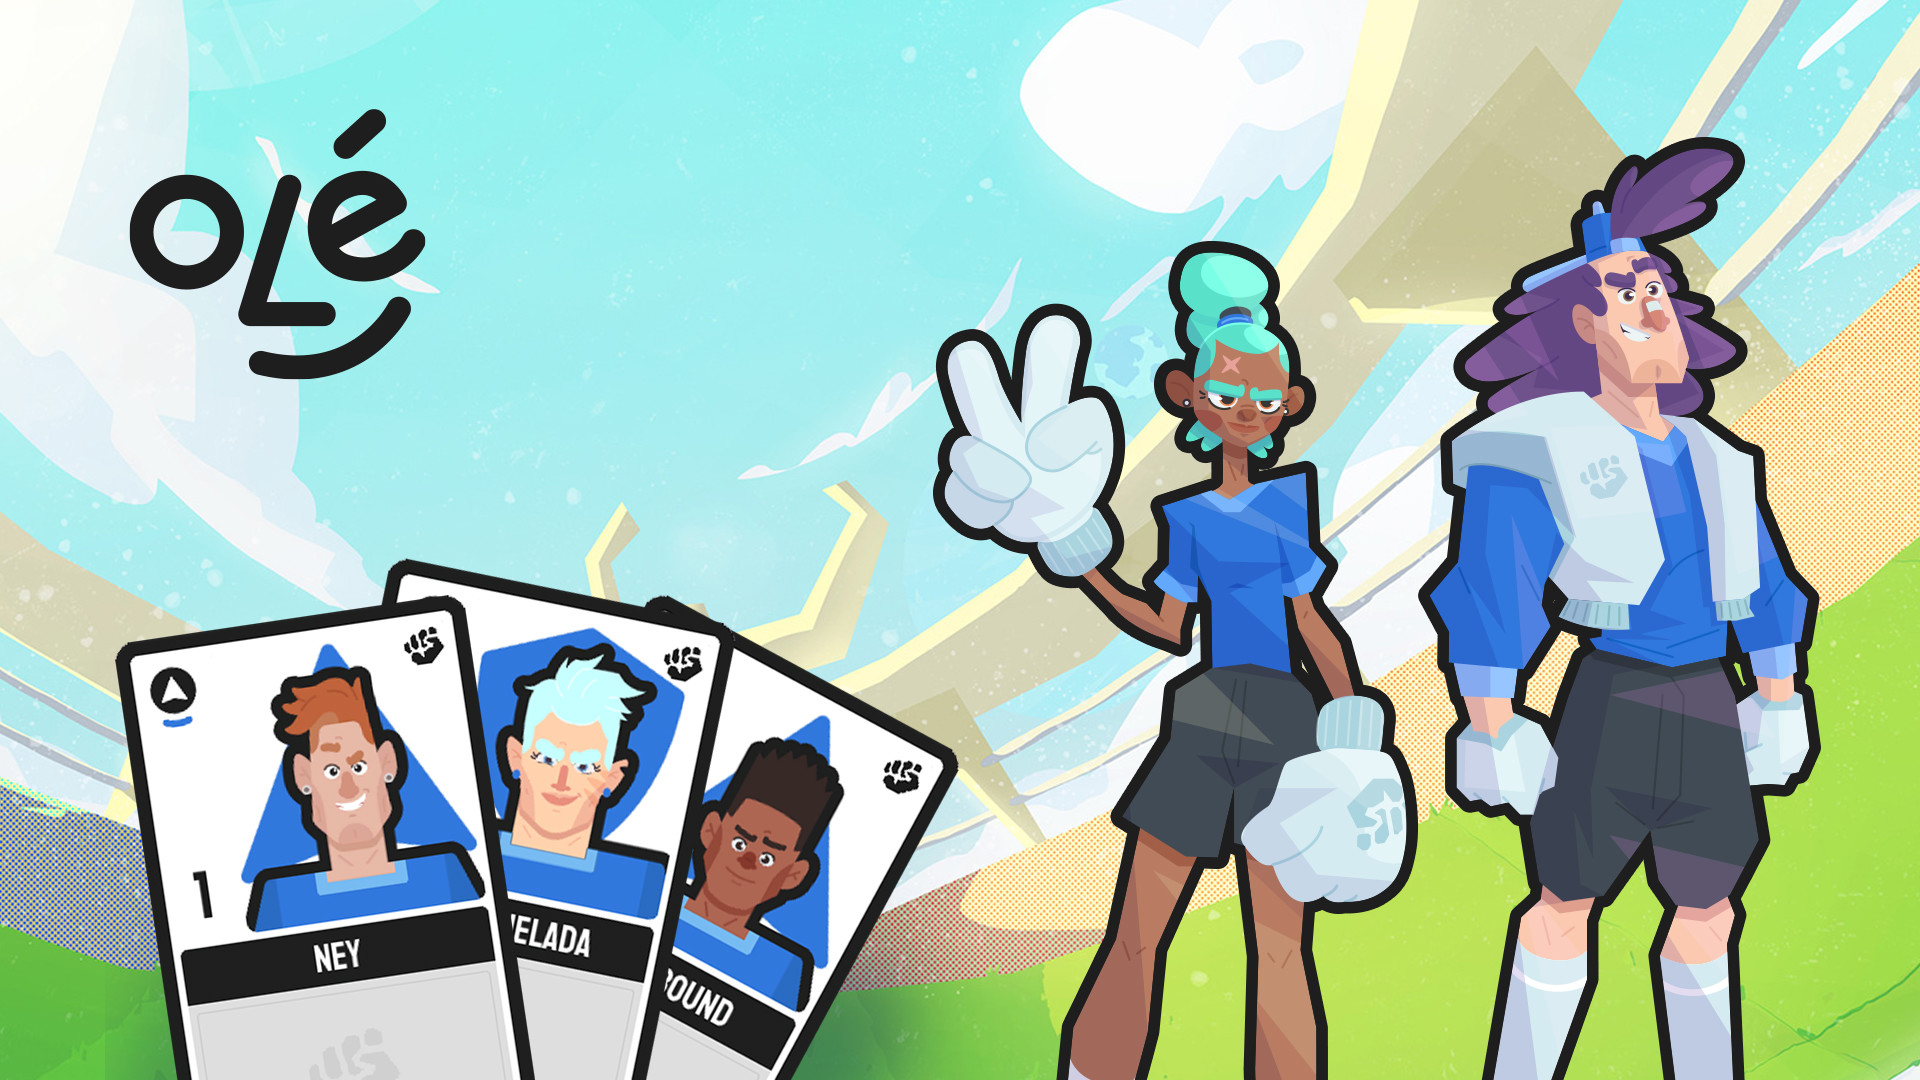 Ole - Card Game screenshot